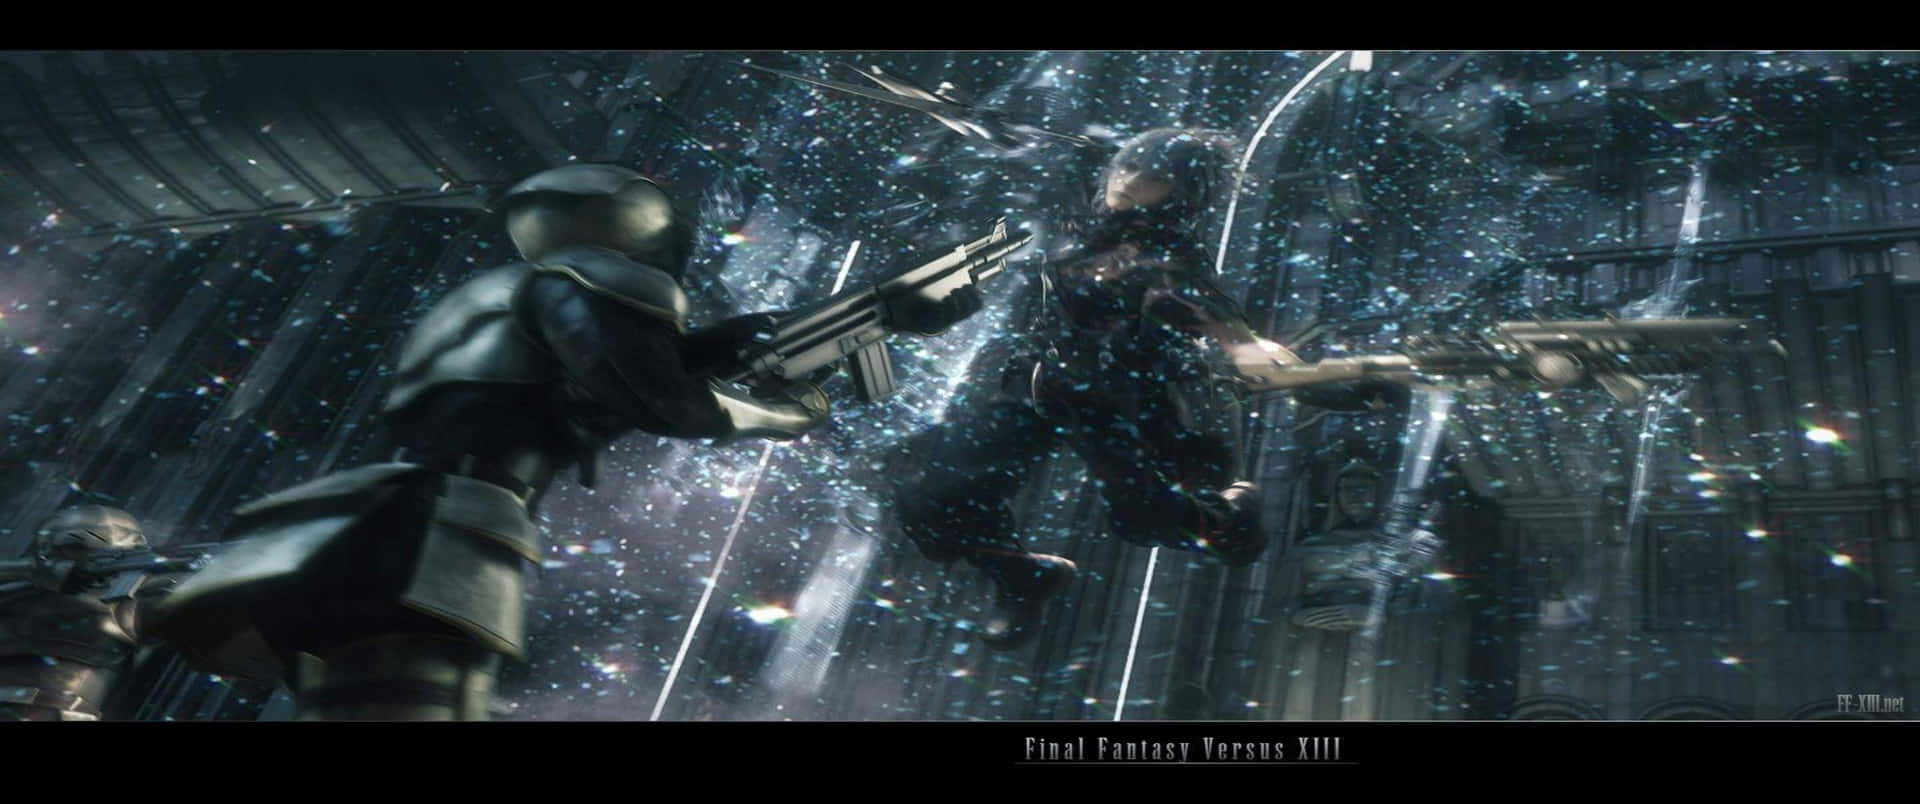 Bildav Final Fantasy Xv-karaktärer I Aktion.